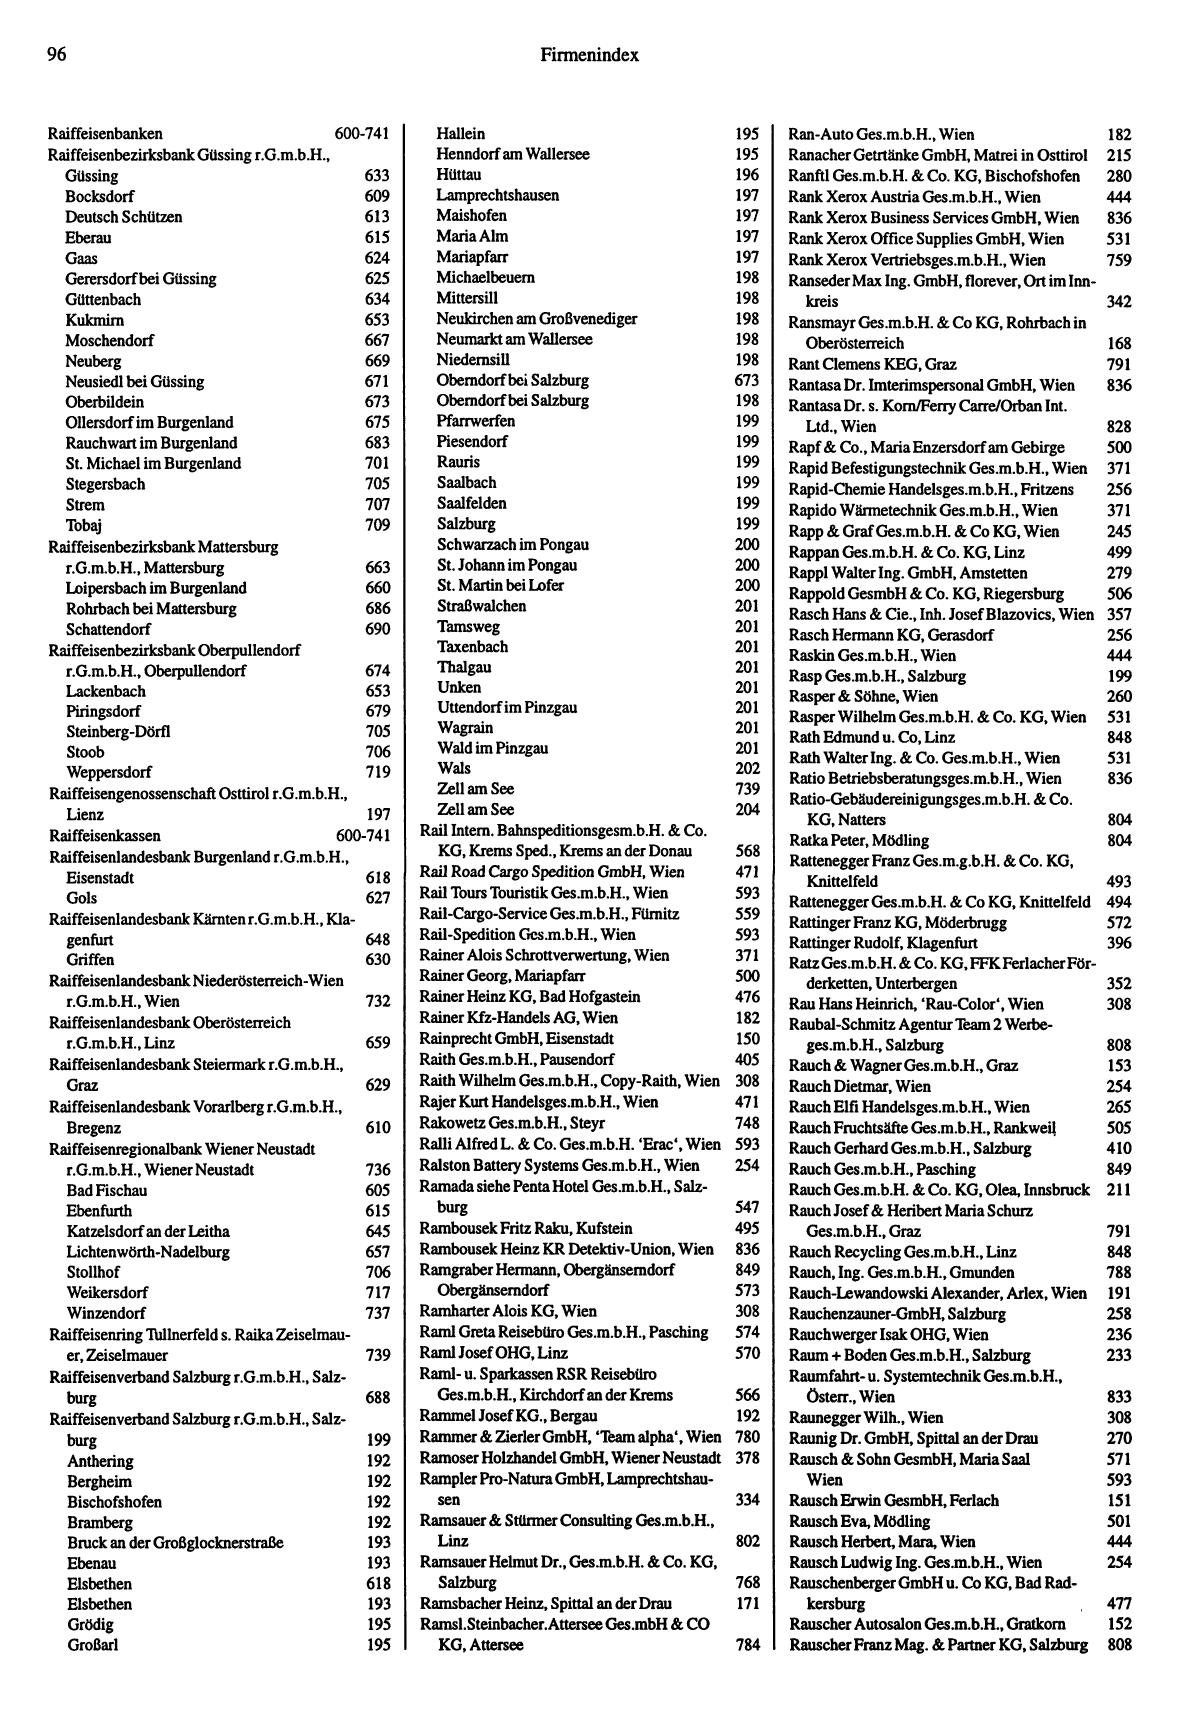 Handel- und Dienstleistungs-Compass 1997/98 - Page 100